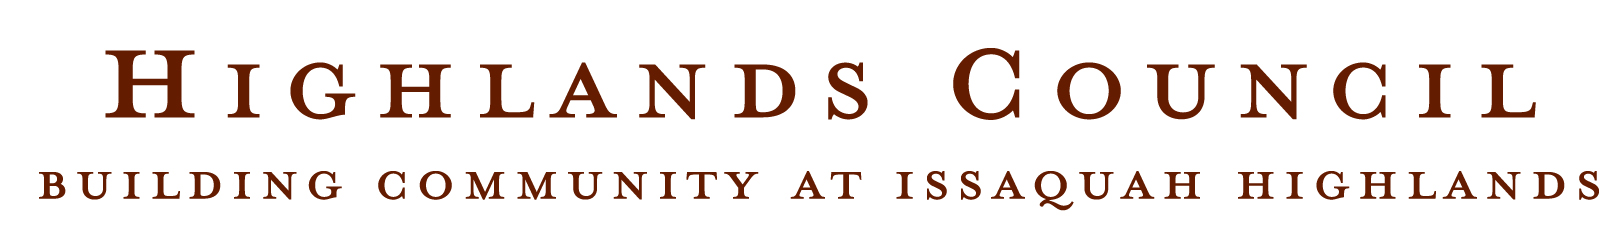 Highlands Council logo